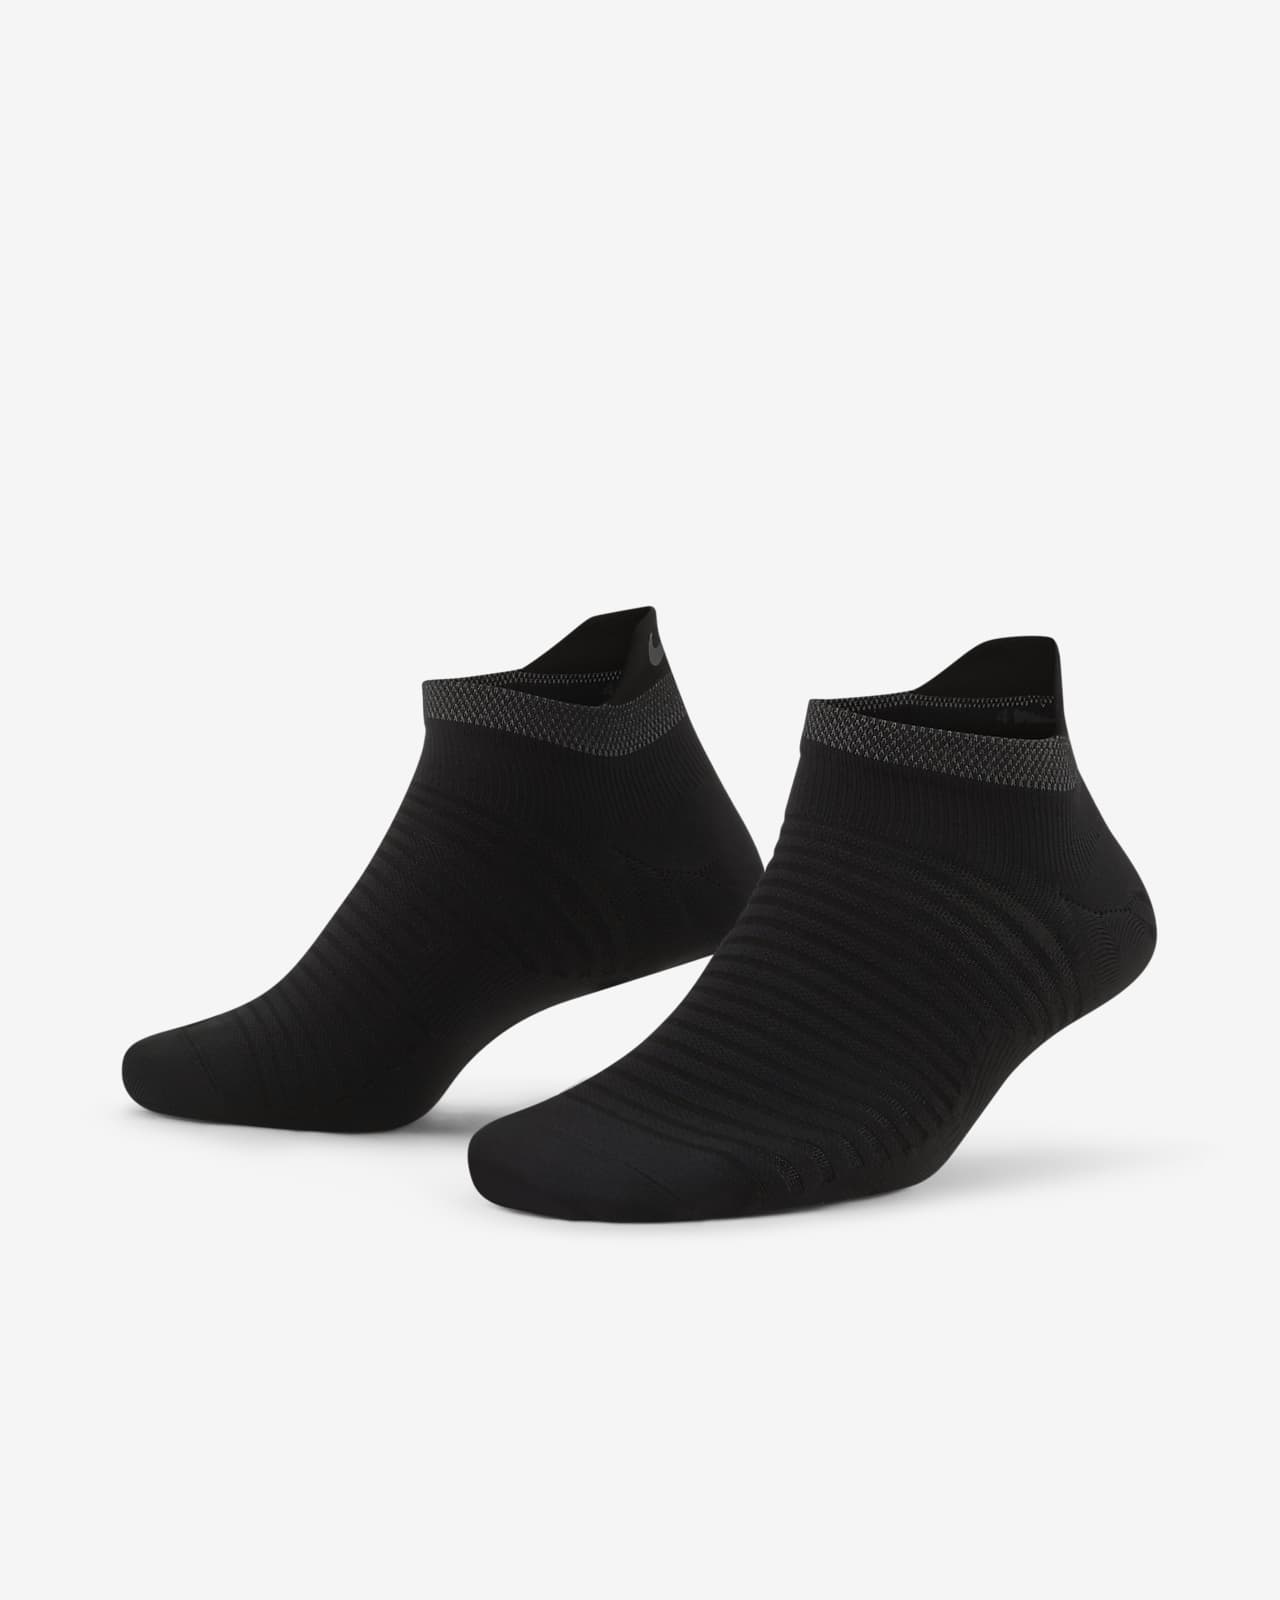 Χαμηλές κάλτσες για τρέξιμο Nike Spark Lightweight